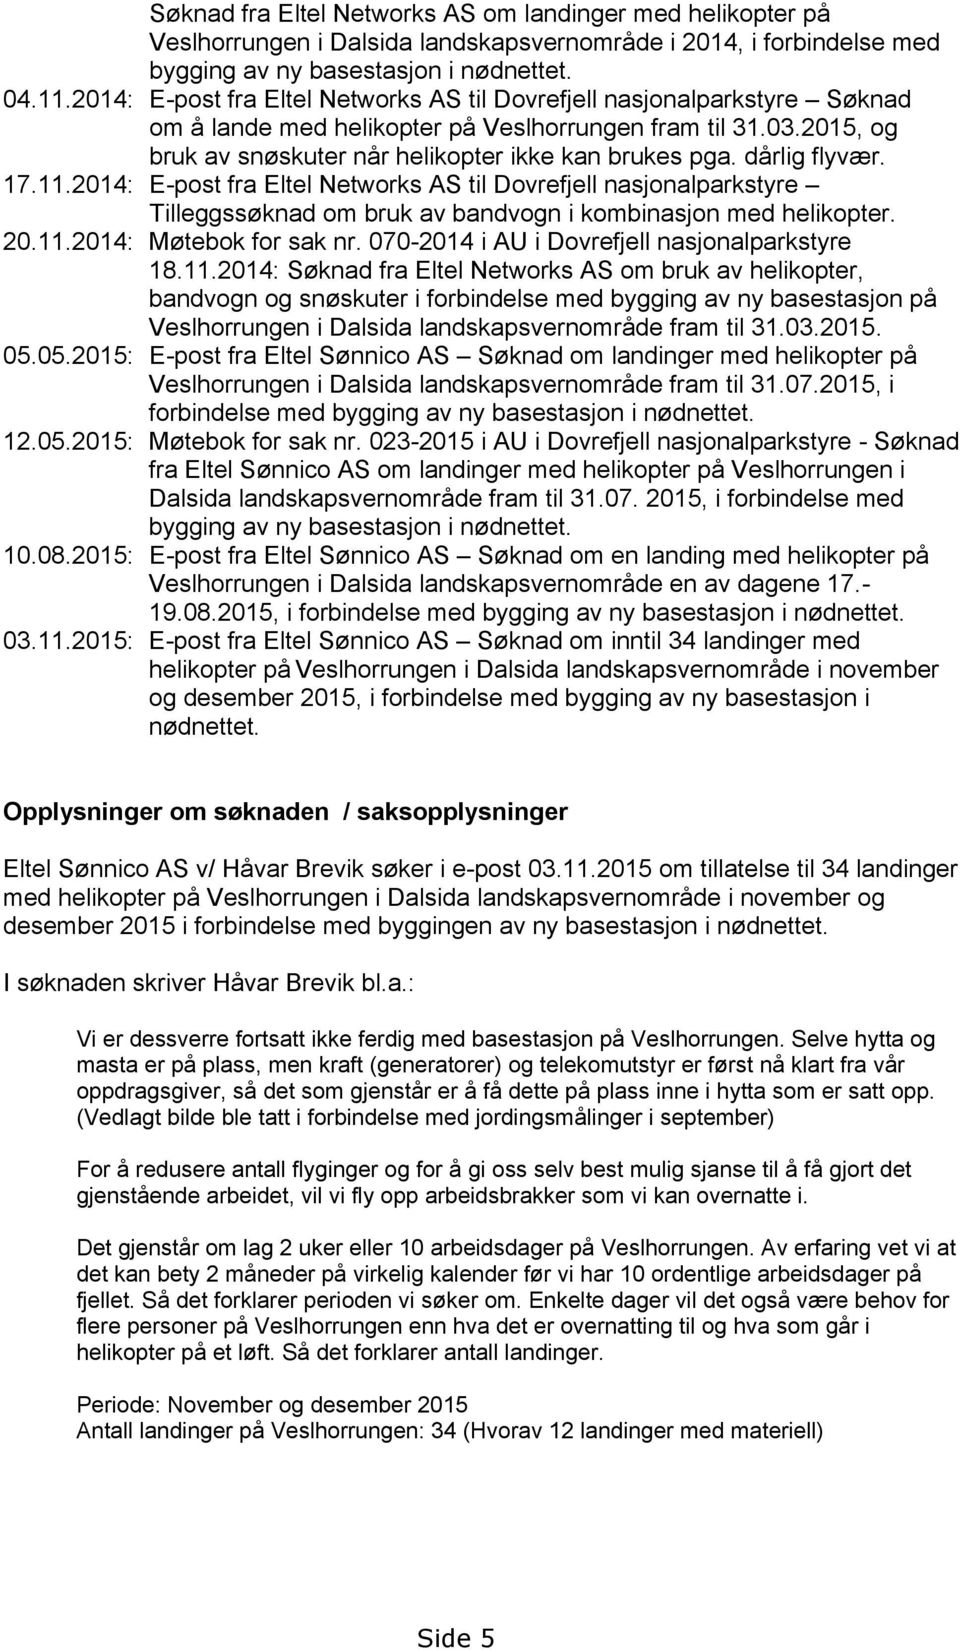 dårlig flyvær. 17.11.2014: E-post fra Eltel Networks AS til Dovrefjell nasjonalparkstyre Tilleggssøknad om bruk av bandvogn i kombinasjon med helikopter. 20.11.2014: Møtebok for sak nr.